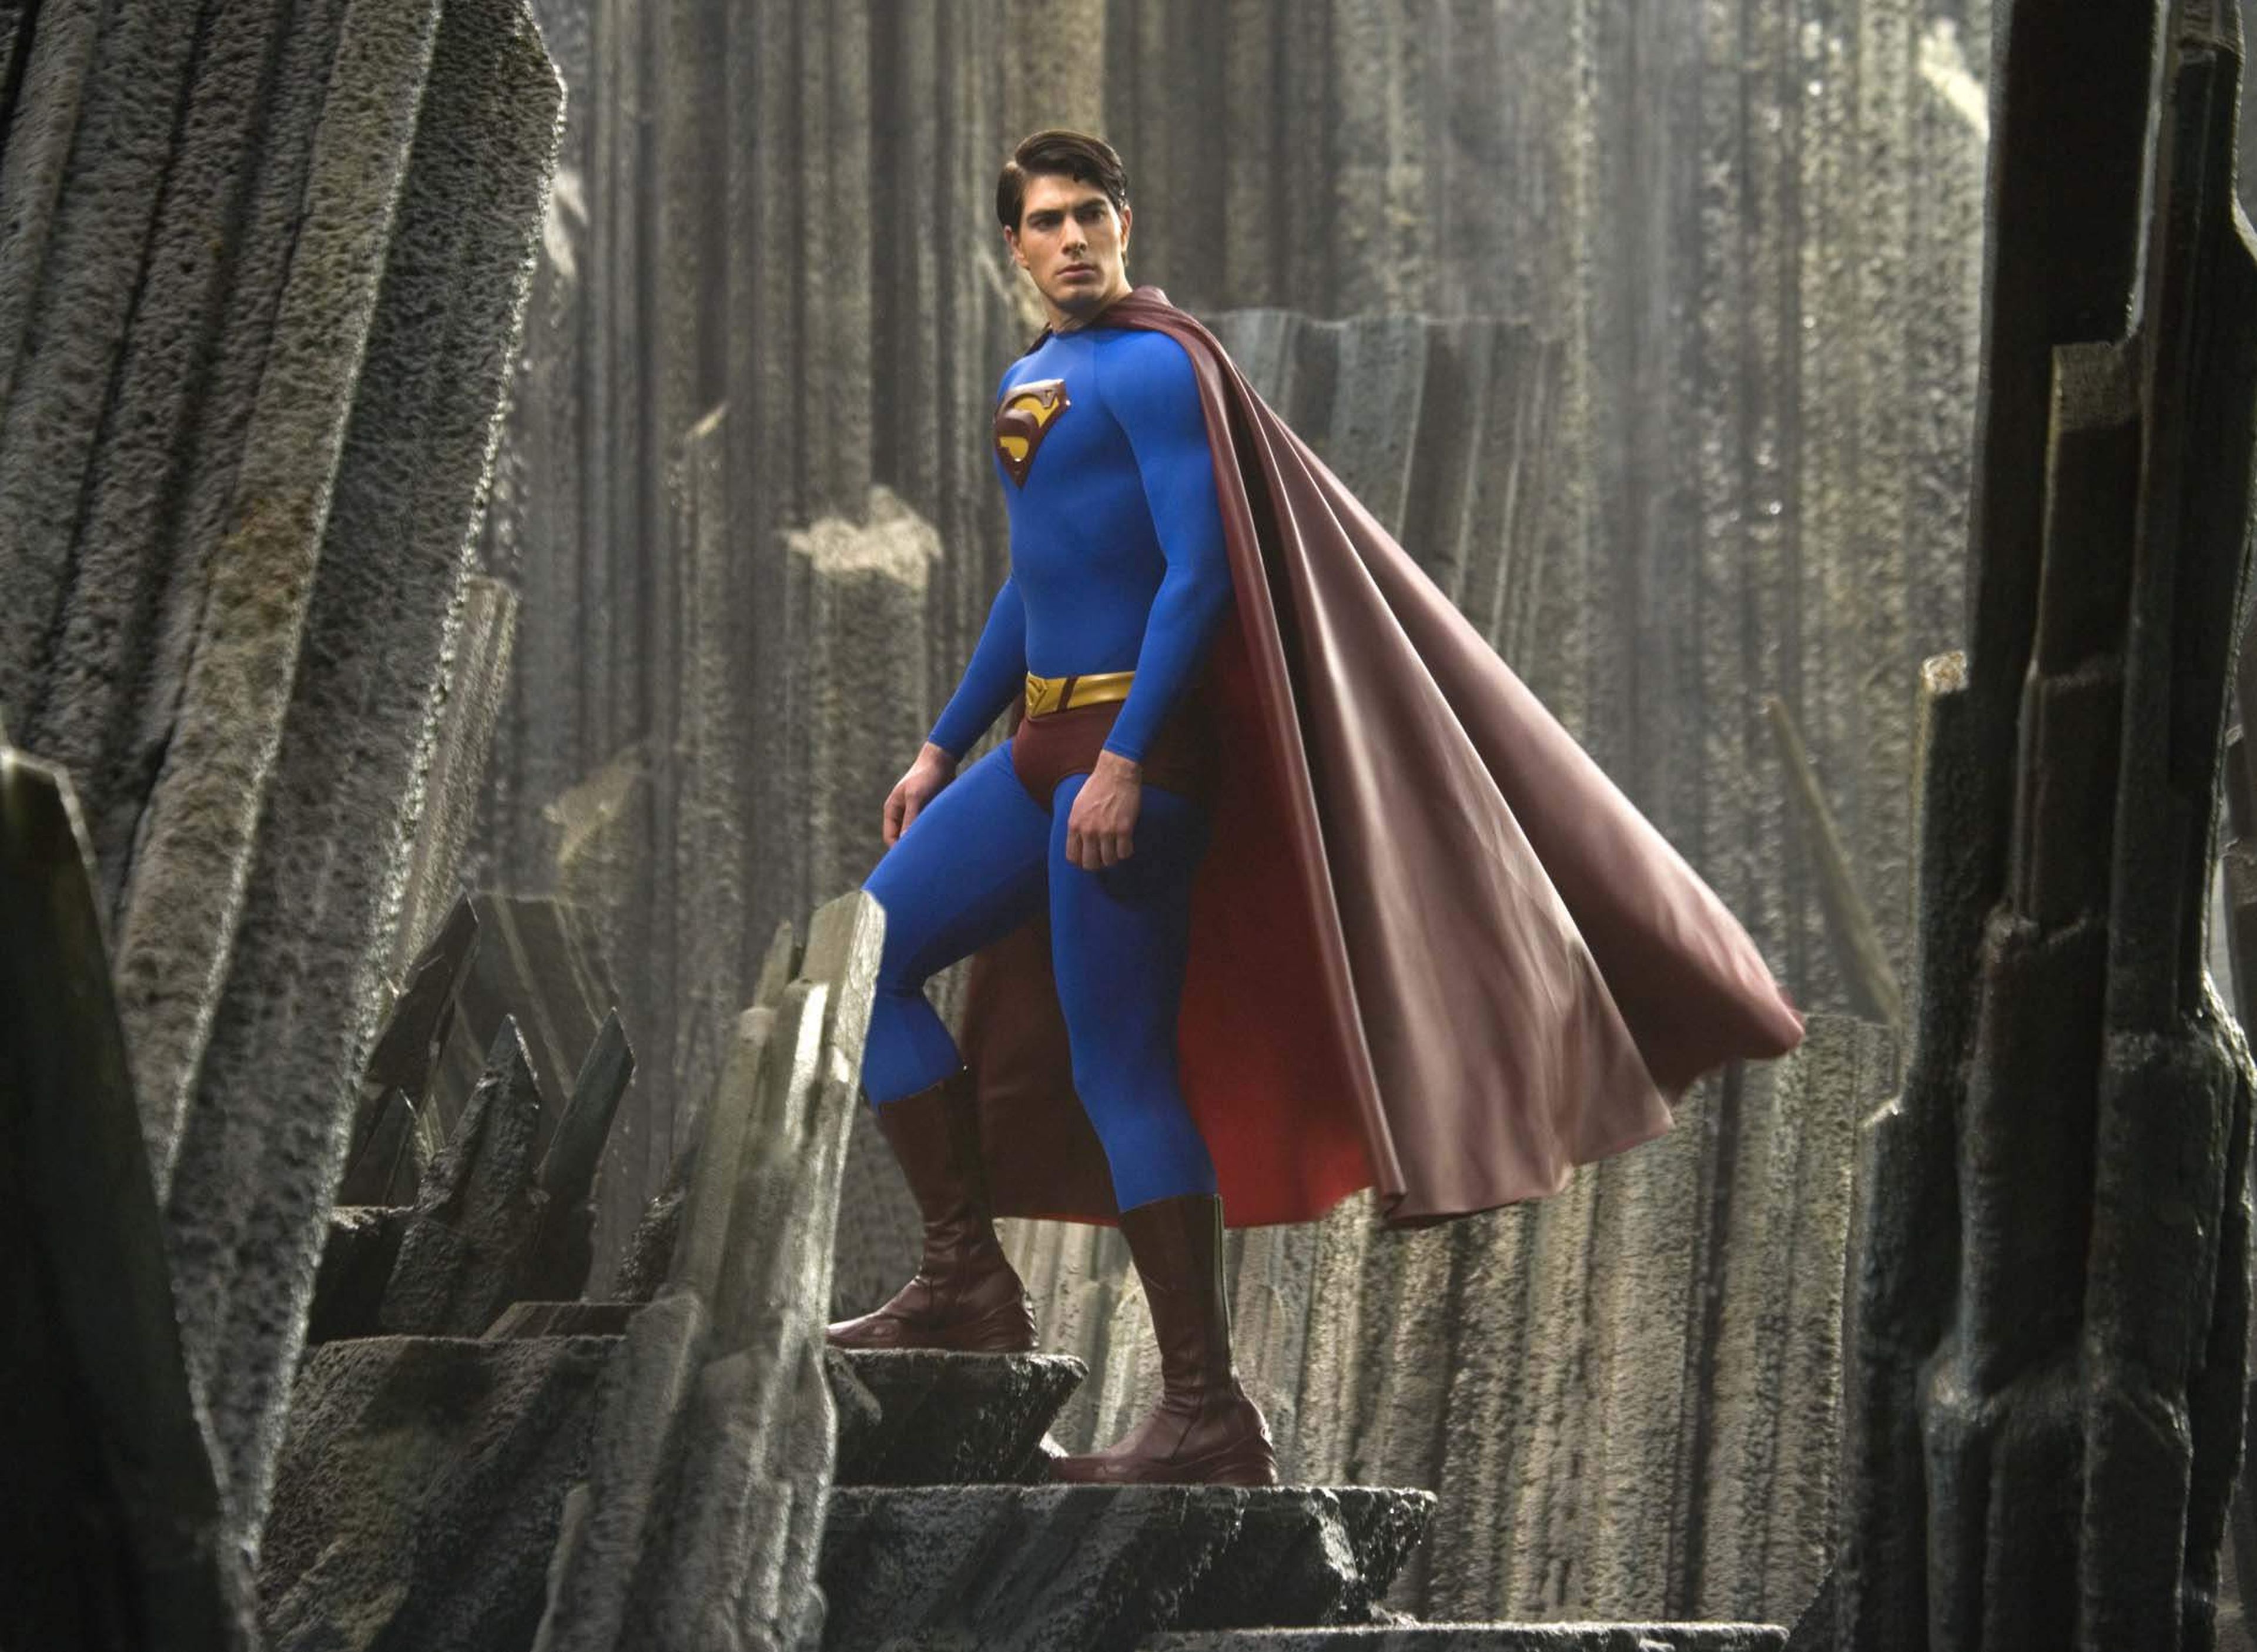 Cine de superhéroes: Superman Returns